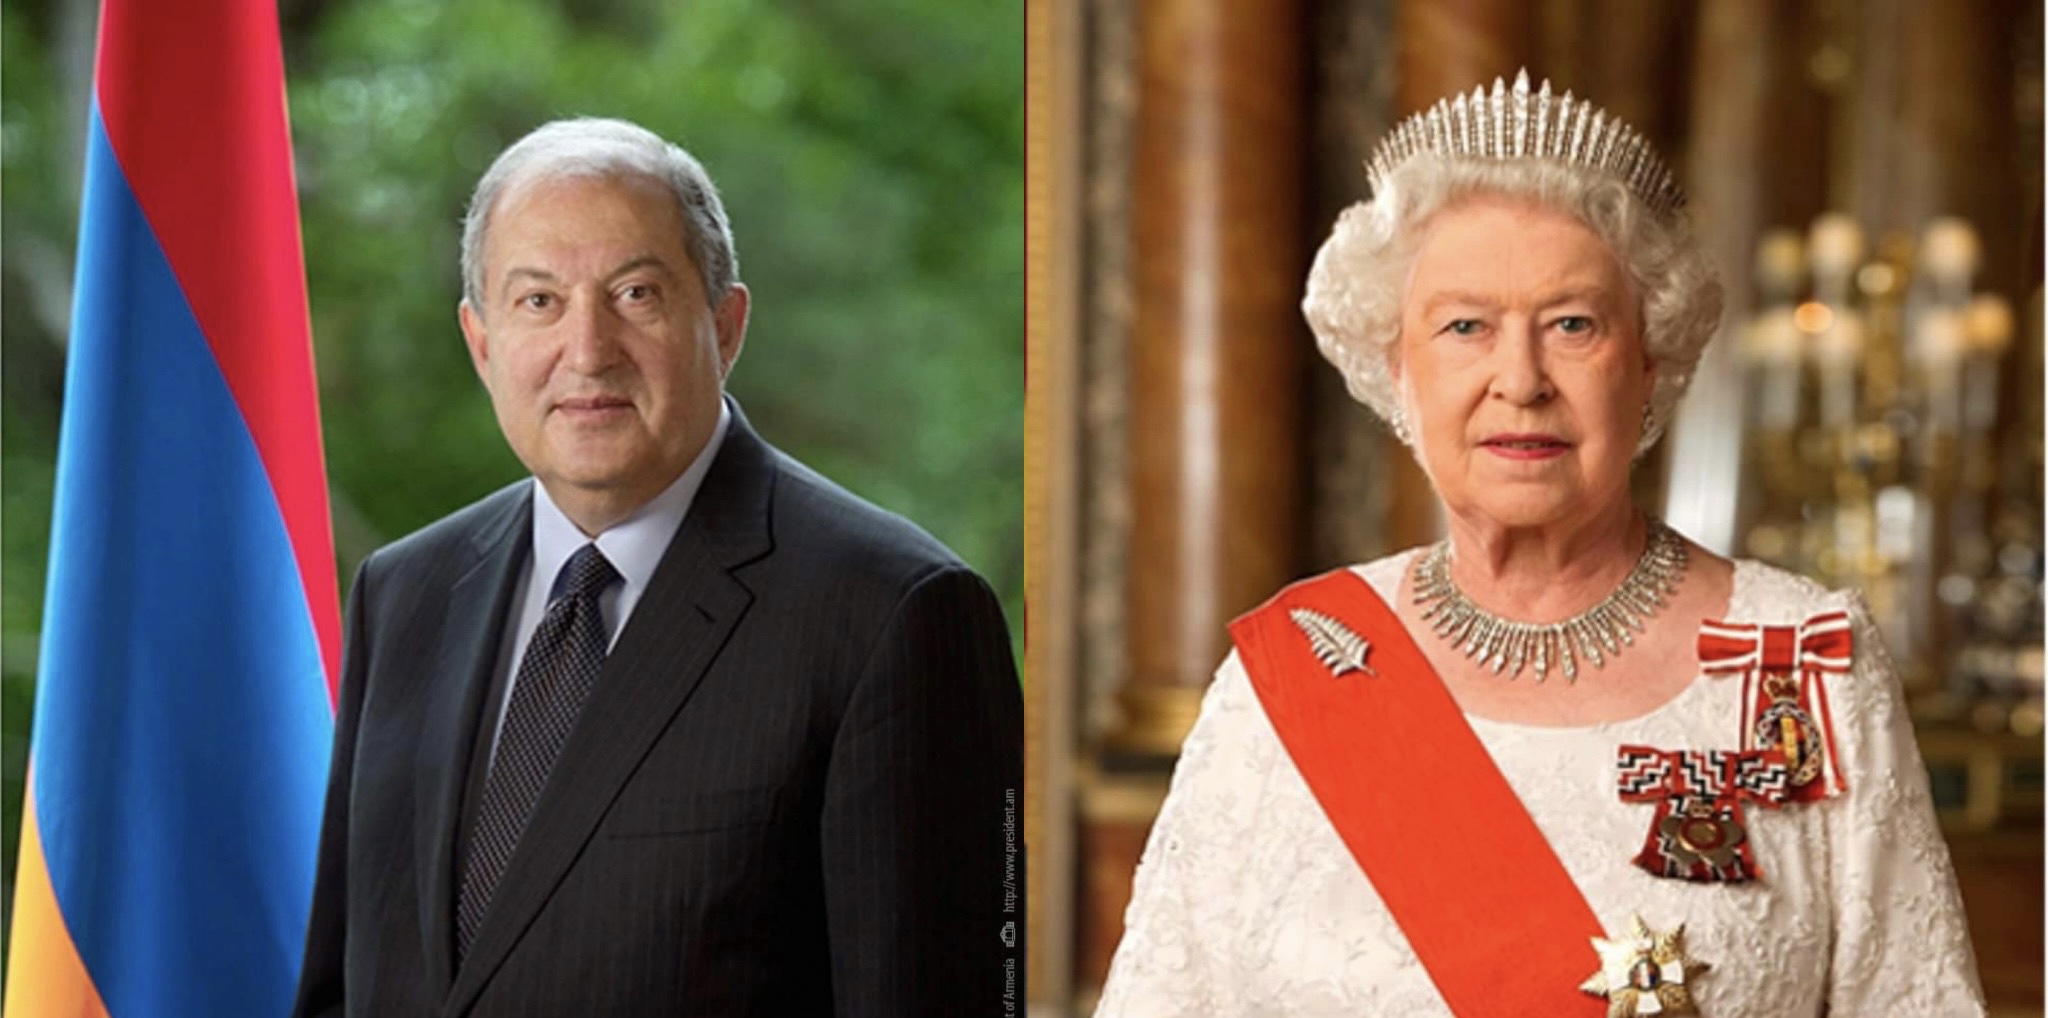 Я полна надежд на то, что в будущем у нас будут лучшие времена: Елизавета II президенту  Армении